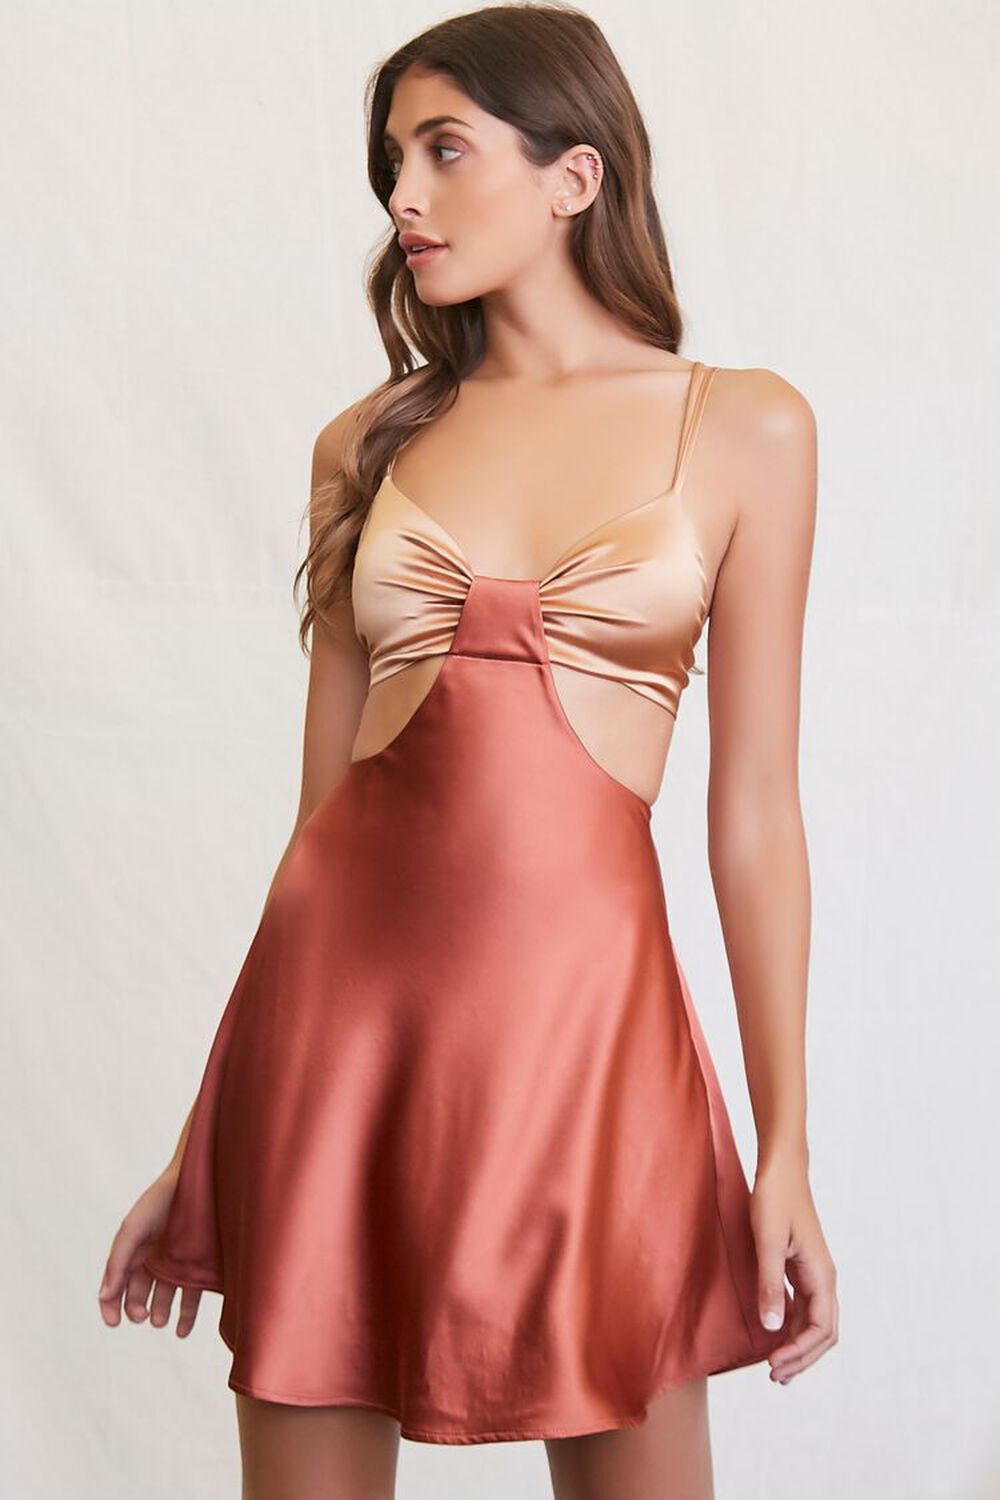 BLUSH/ROSE Satin Cutout Mini Dress, image 1